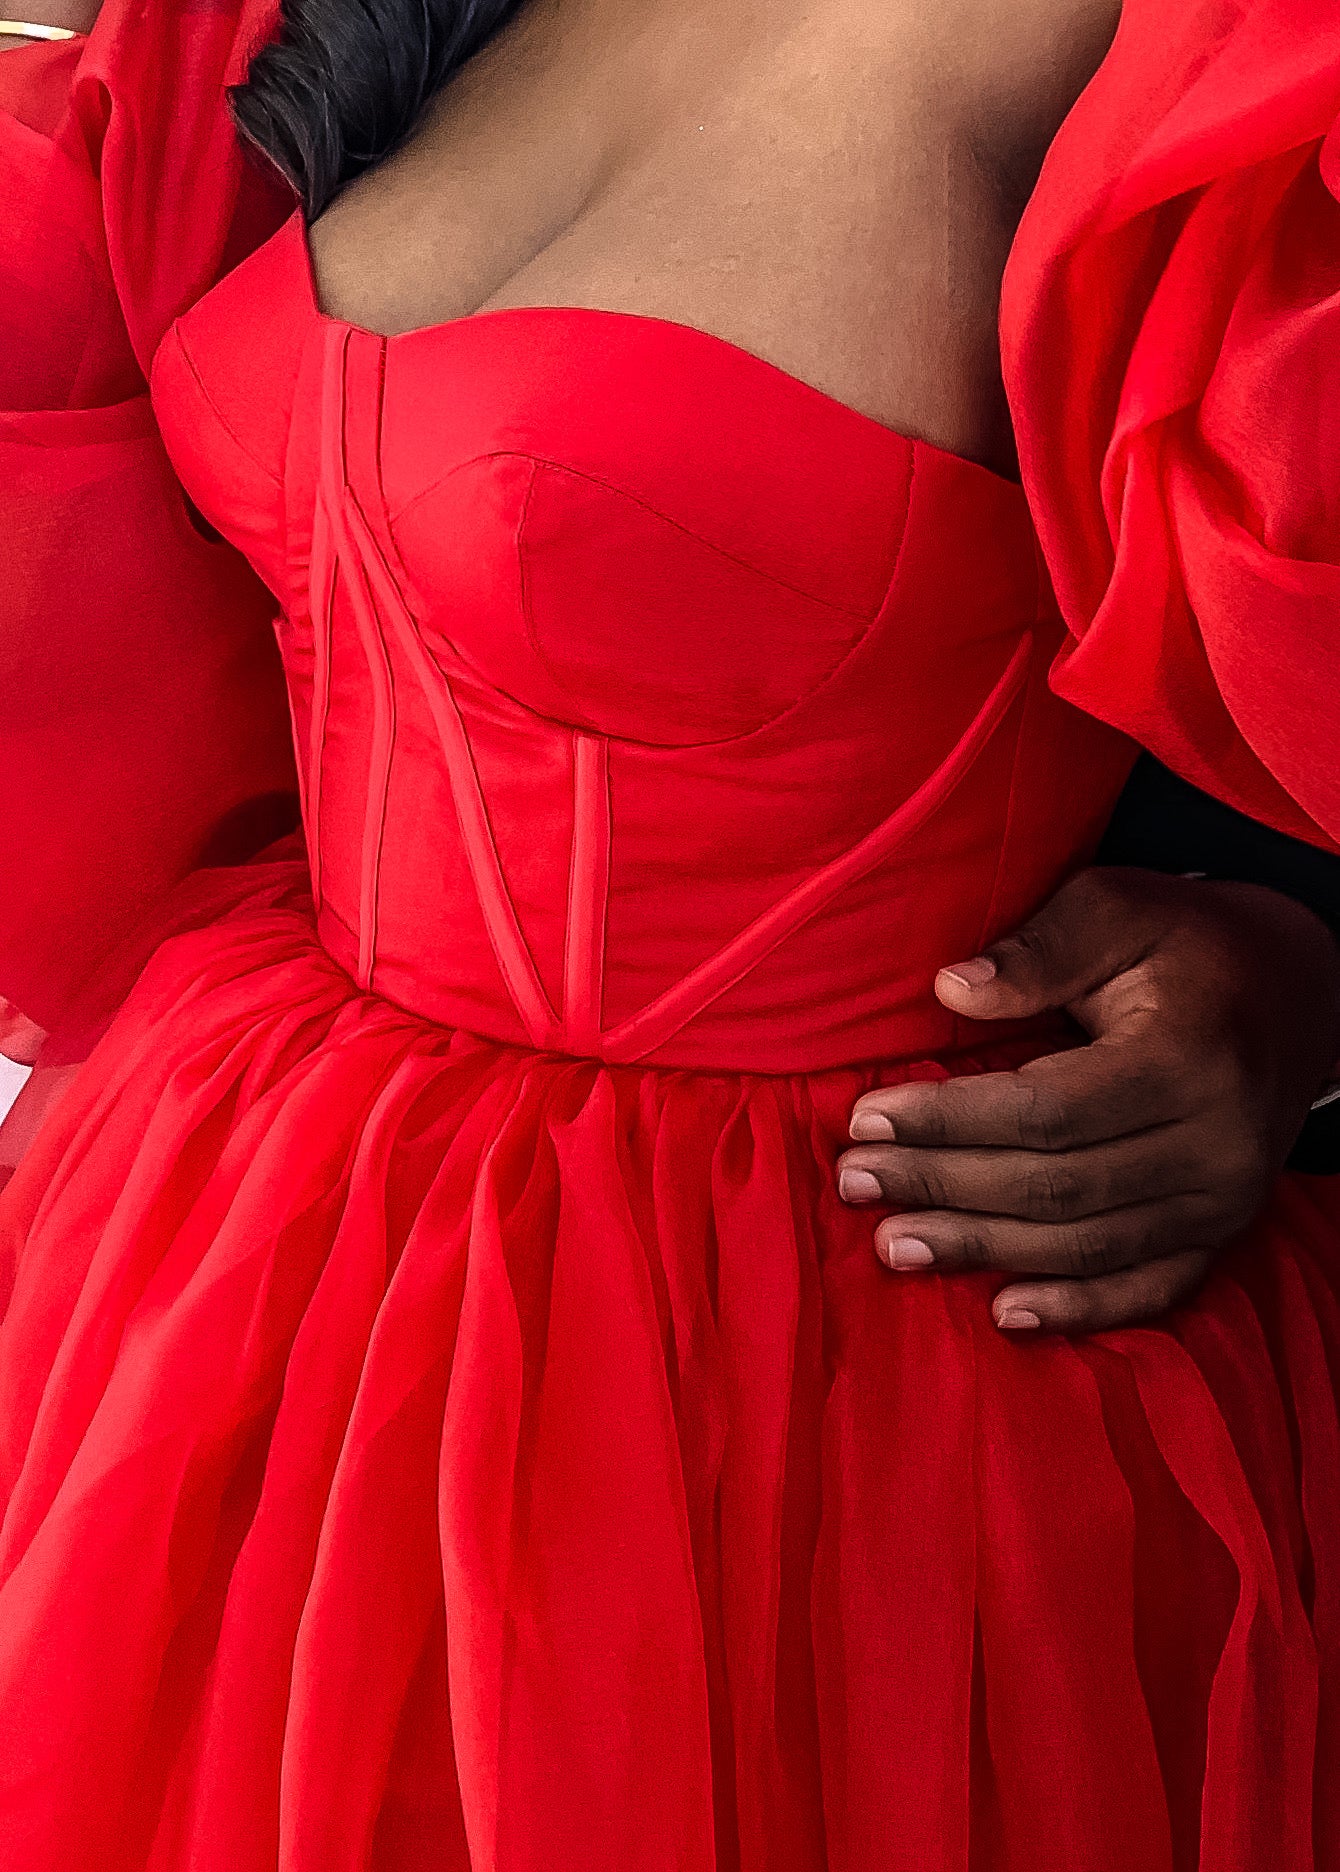 The Red Sofia Dress